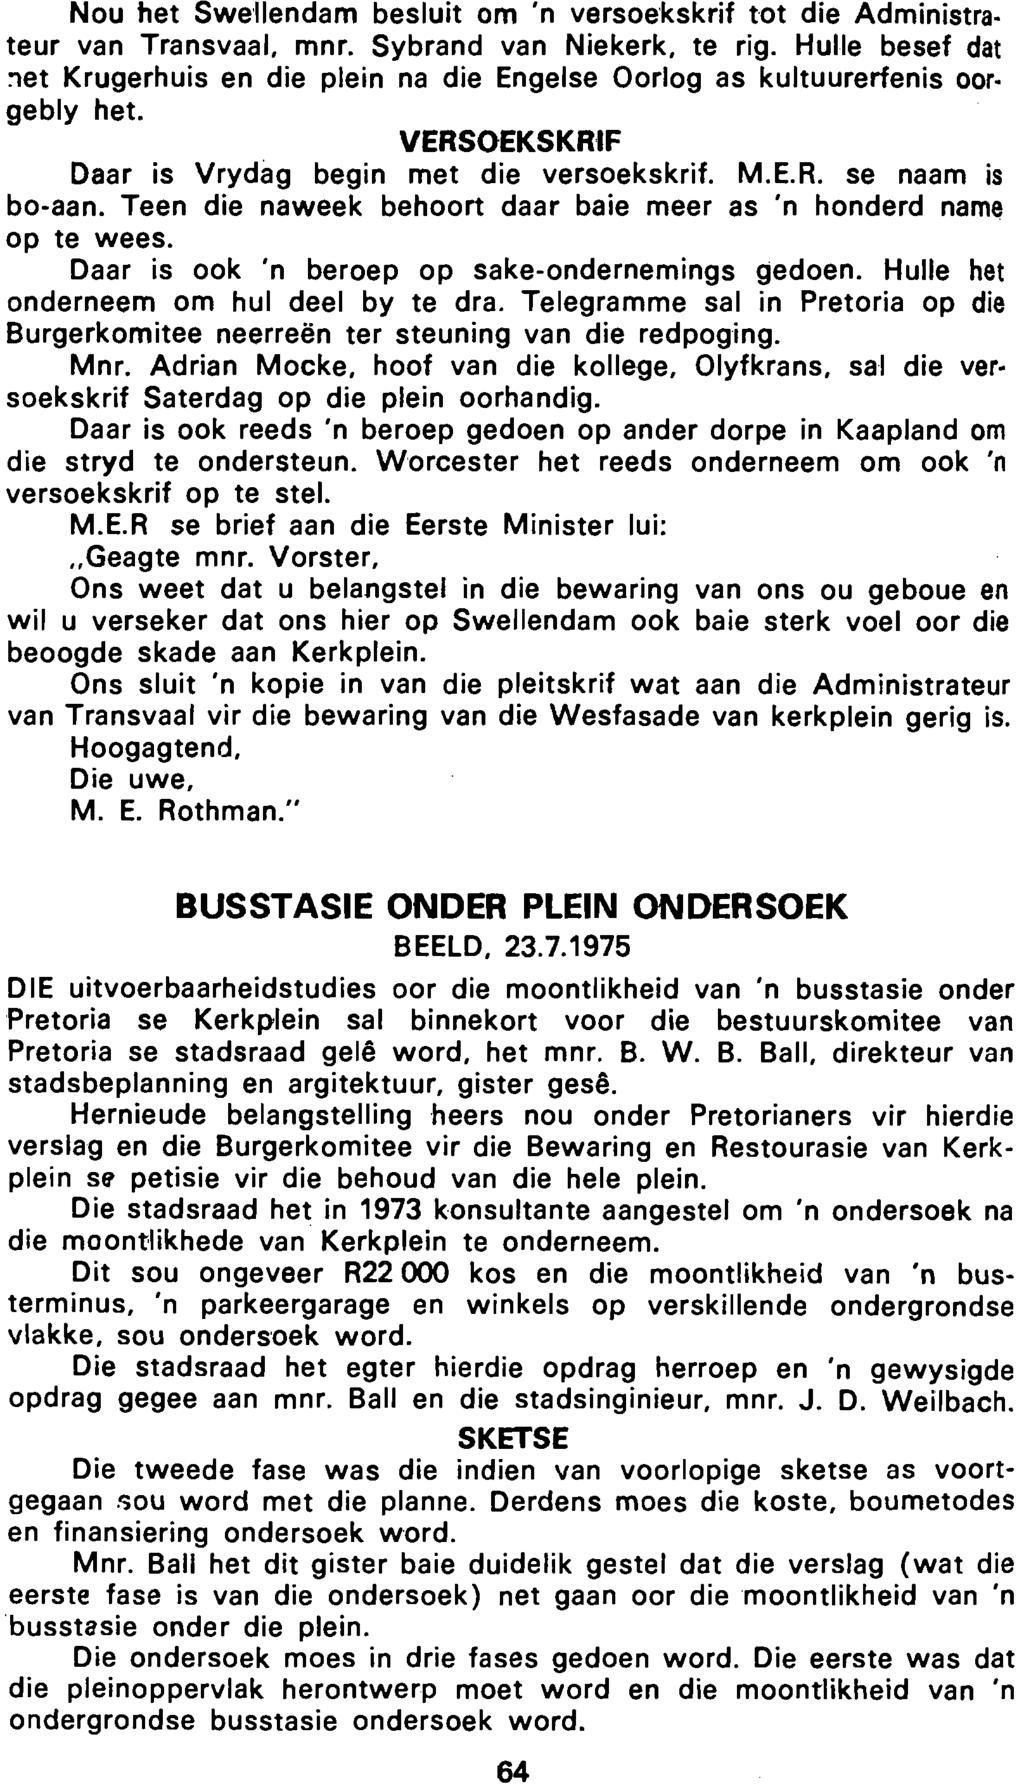 Nou het SweUendam besluit om 'n versoekskrif tot die Administrateur van Transvaal, mnr. Sybrand van Niekerk, te rig.